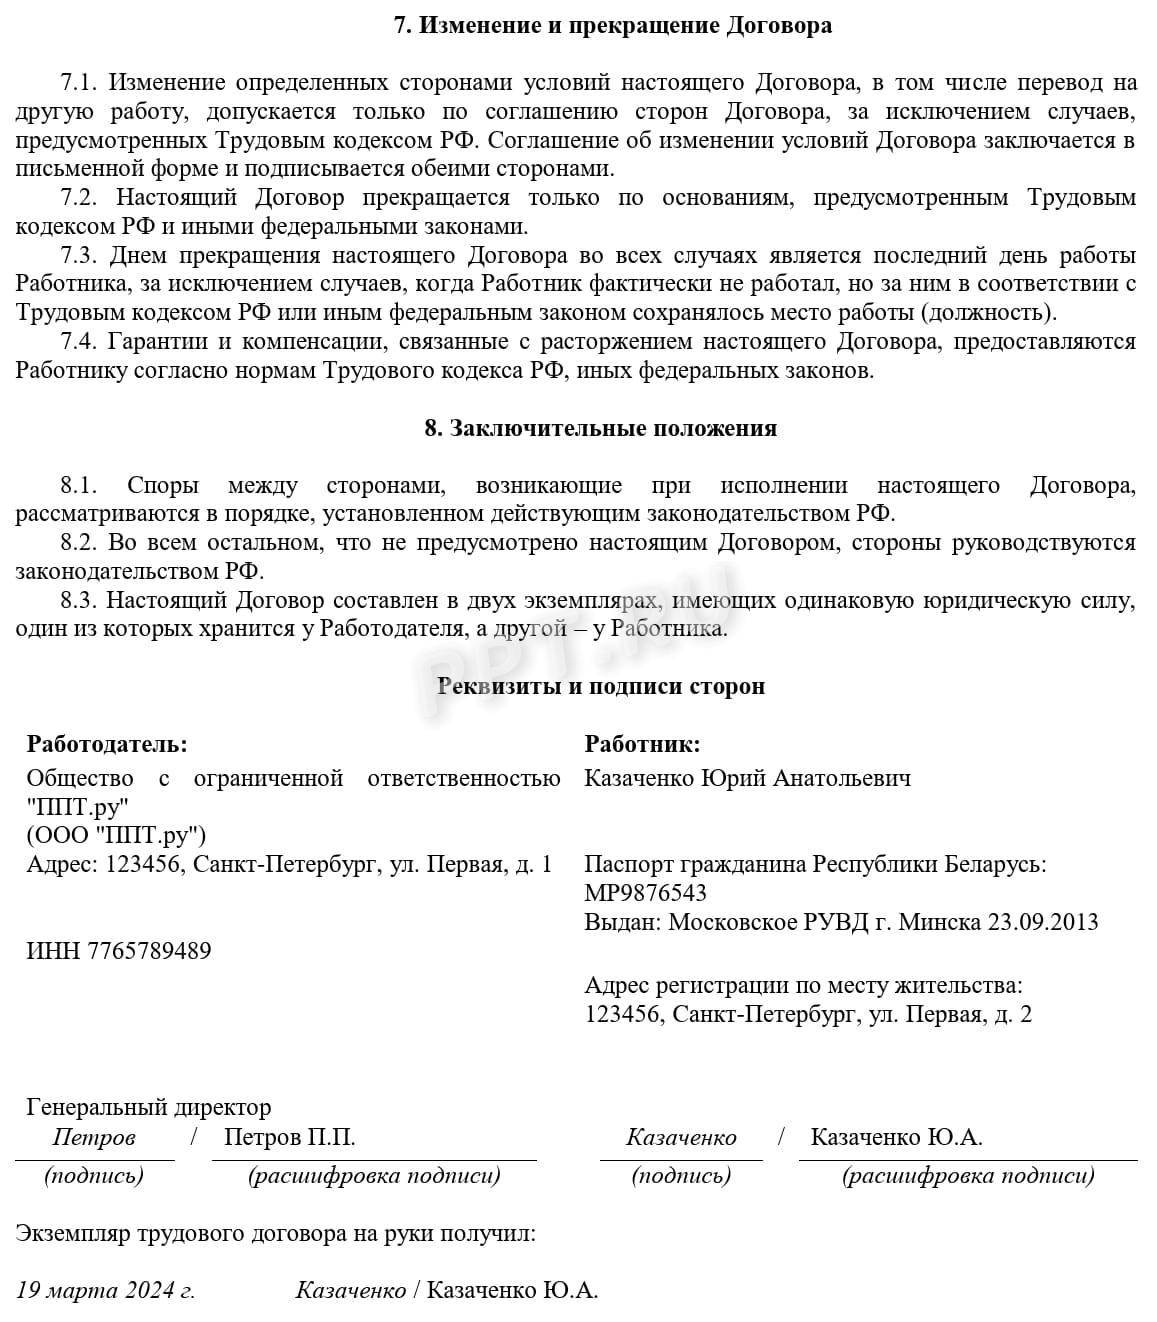 Образец трудового договора с белорусом, стр. 5